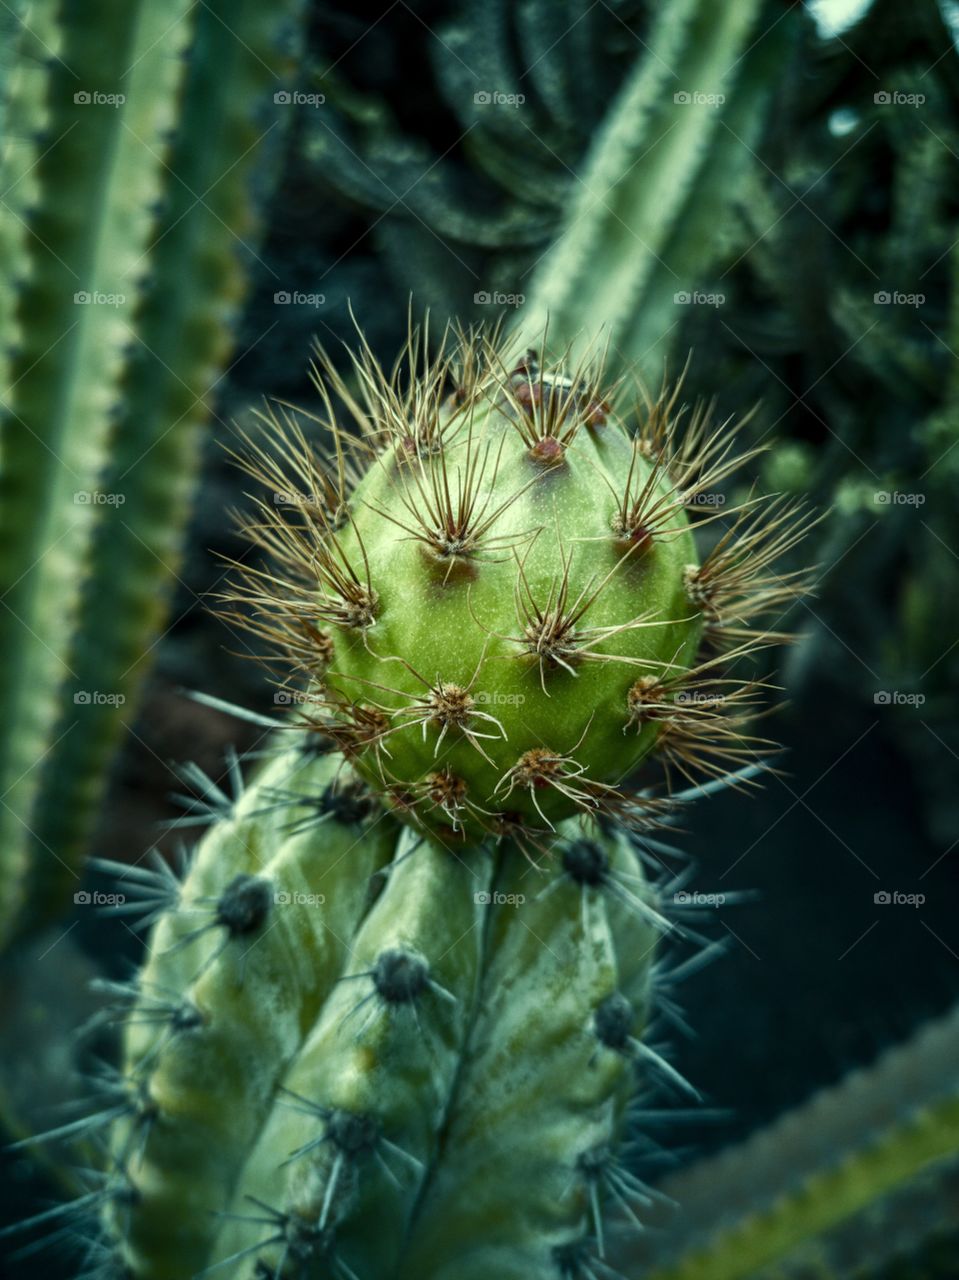 Cactus series